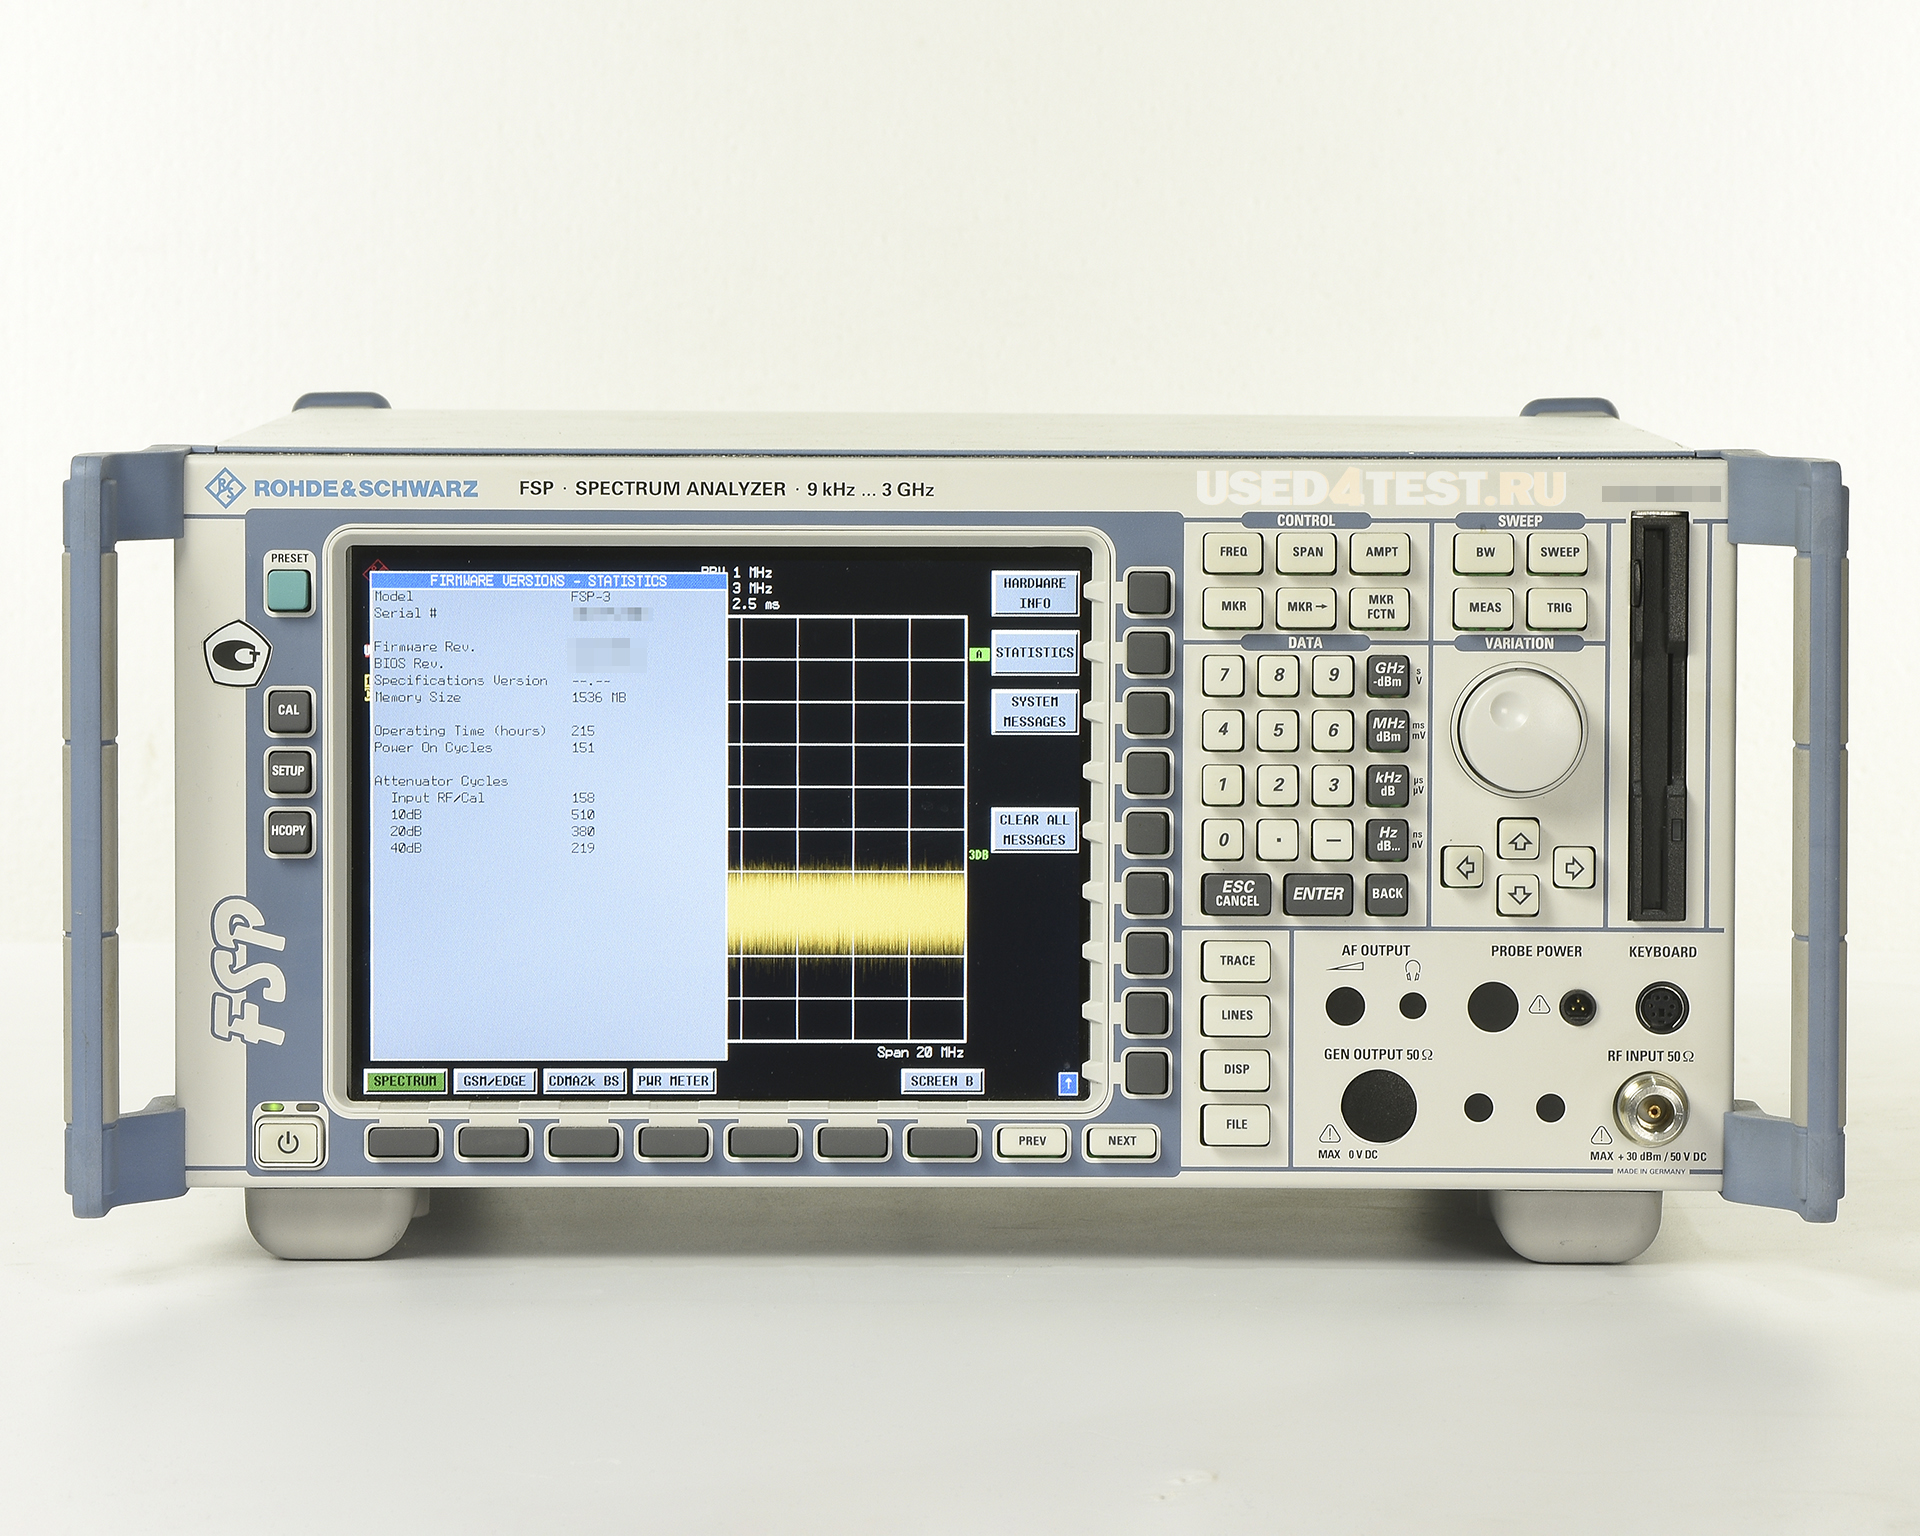 Анализатор спектра Rohde&Schwarz FSP3
 с диапазоном частот от 9 кГц до 3 ГГц
 

 Дополнительные опции: 


	R&S® FS-K5 - Измерения параметров модуляции и спектра для базовых станций и мобильных телефонов стандартов GSM/EDGE
	R&S® FS-K7 - Измерительный ЧМ/АМ/ФМ-демодулятор общего назначения
	R&S® FS-K8 - Измерения характеристик передатчиков стандарта Bluetooth
	R&S® FS-K9 - Измерение мощности при помощи измерительных головок
	R&S® FS-K30 - Измерение коэффициента шума, функции аналогичны R&S®FS-K3, но с поддержкой дистанционного управления
	R&S® FS-K40 - Аппаратно-программное обеспечение для измерений фазового шума

 

 Стоимость указана в Рублях DDP Москва по безналичному расчету без НДС
